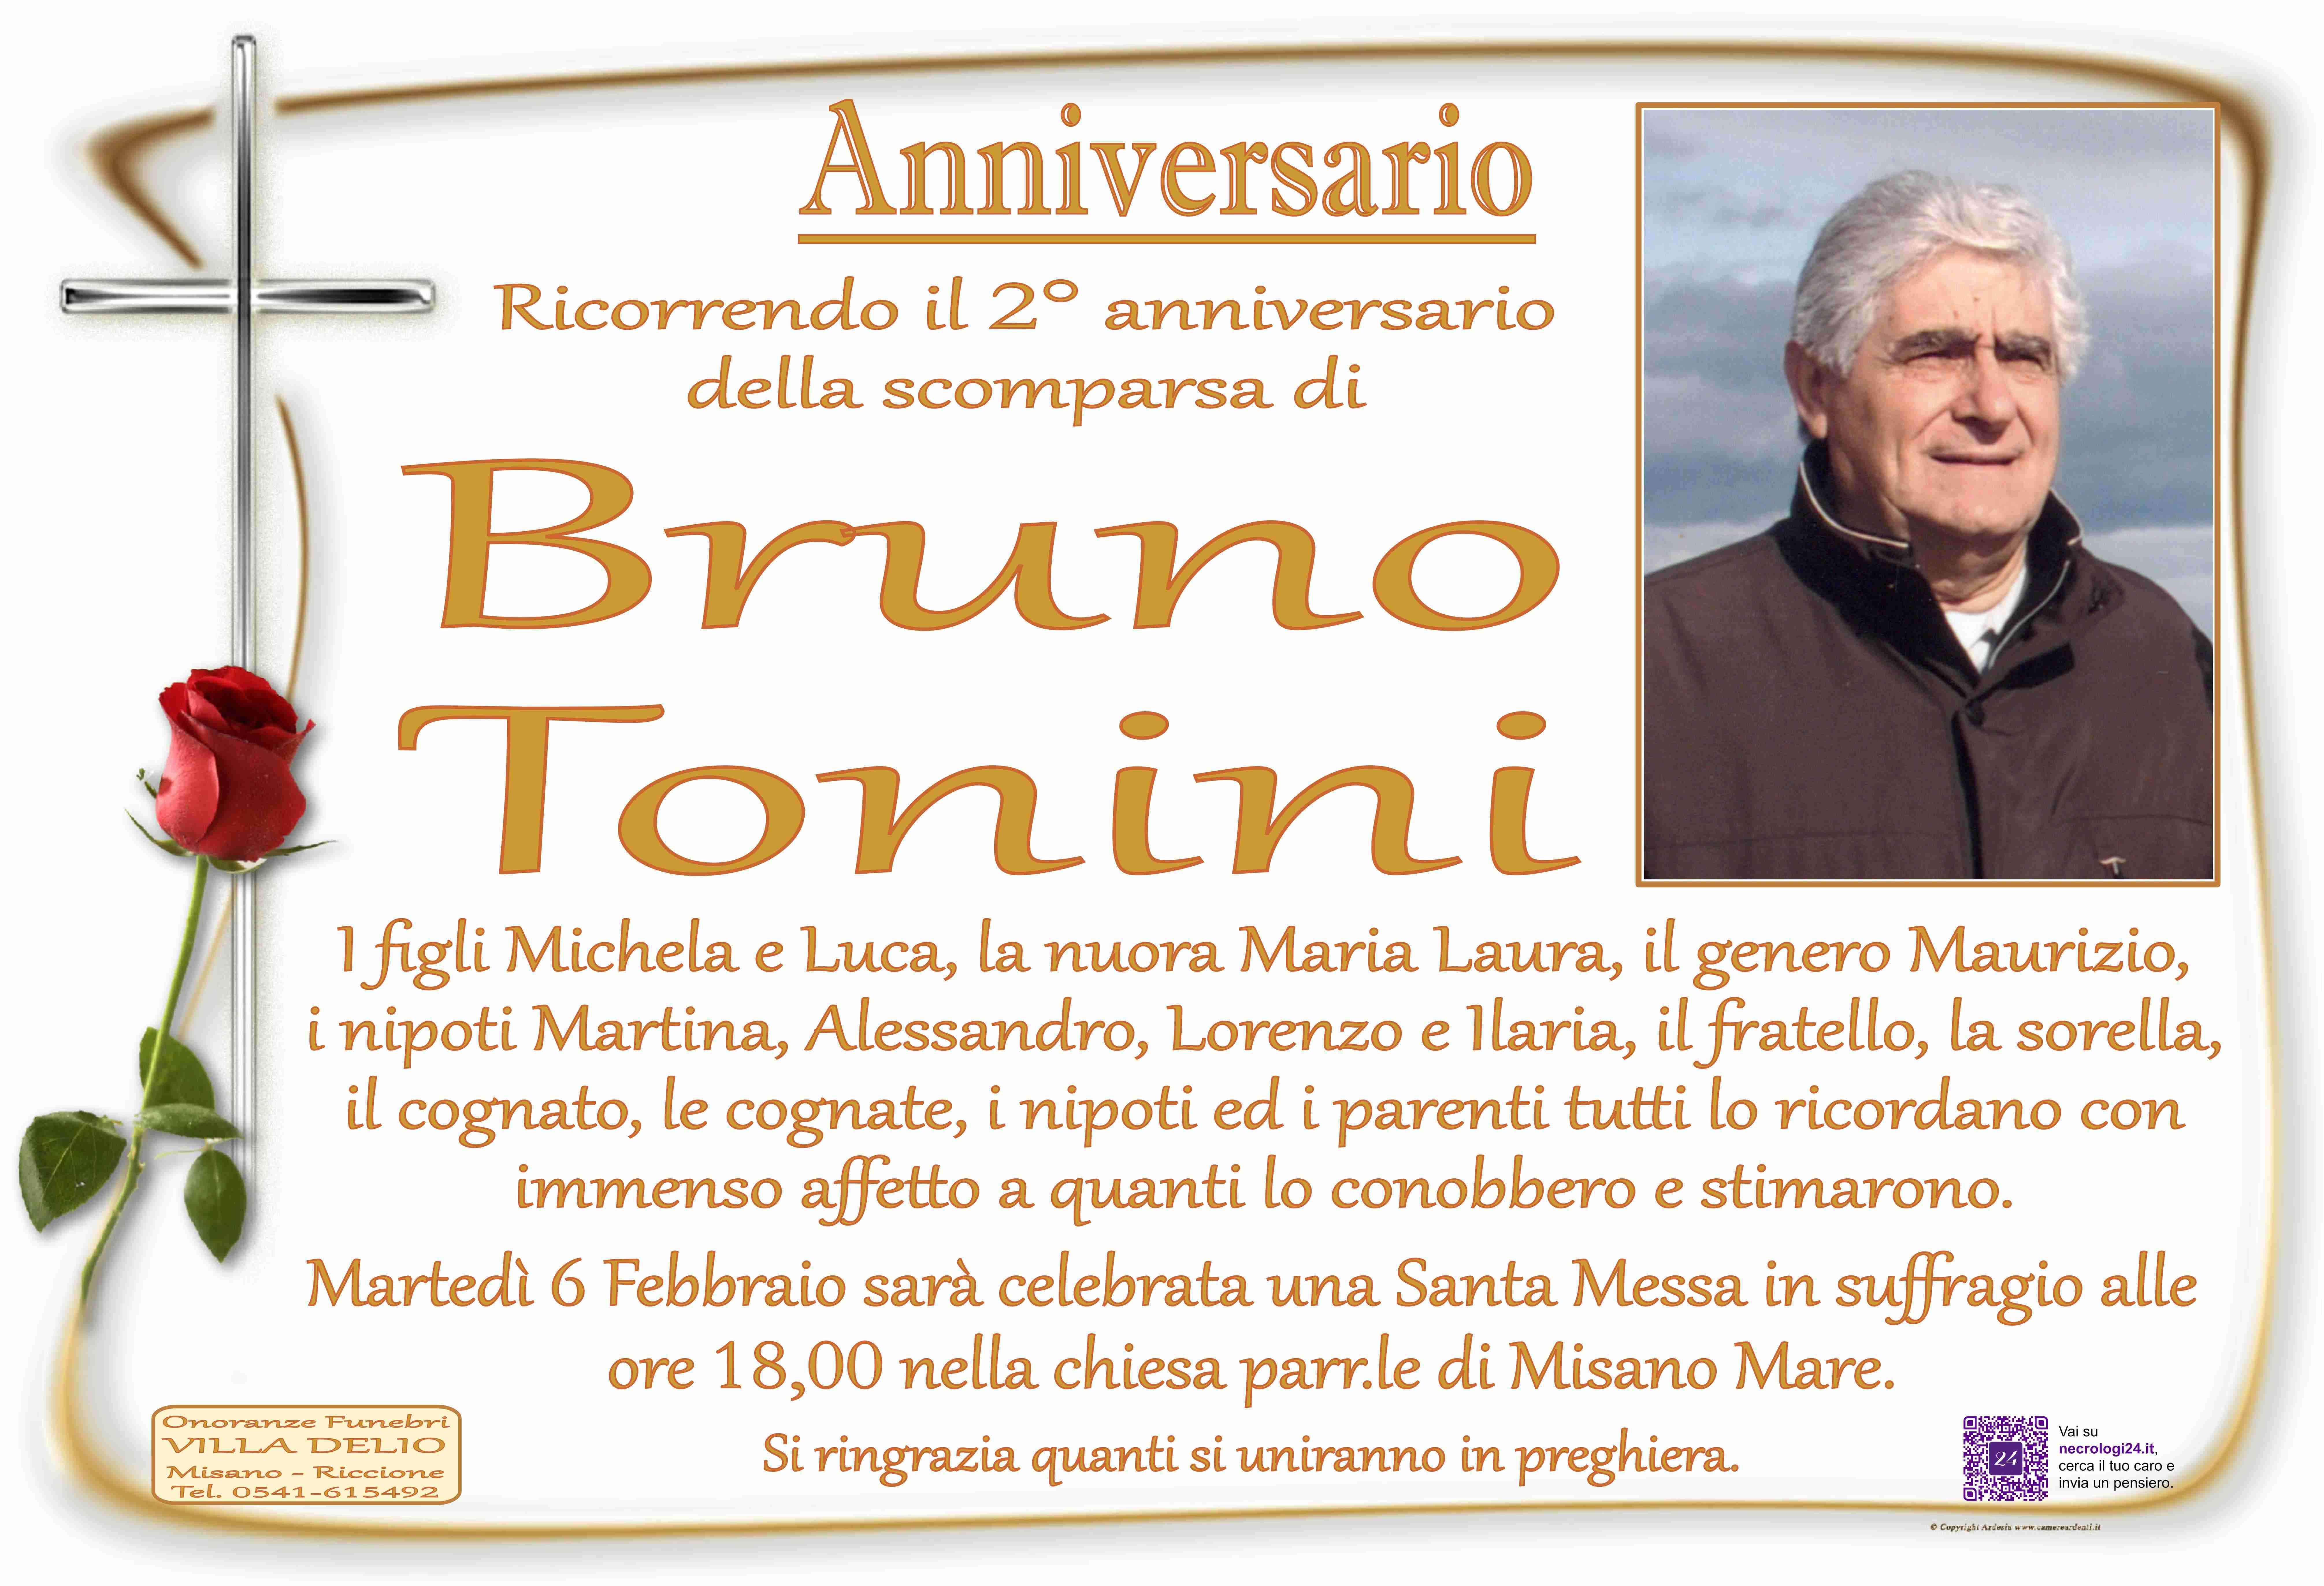 Bruno Tonini